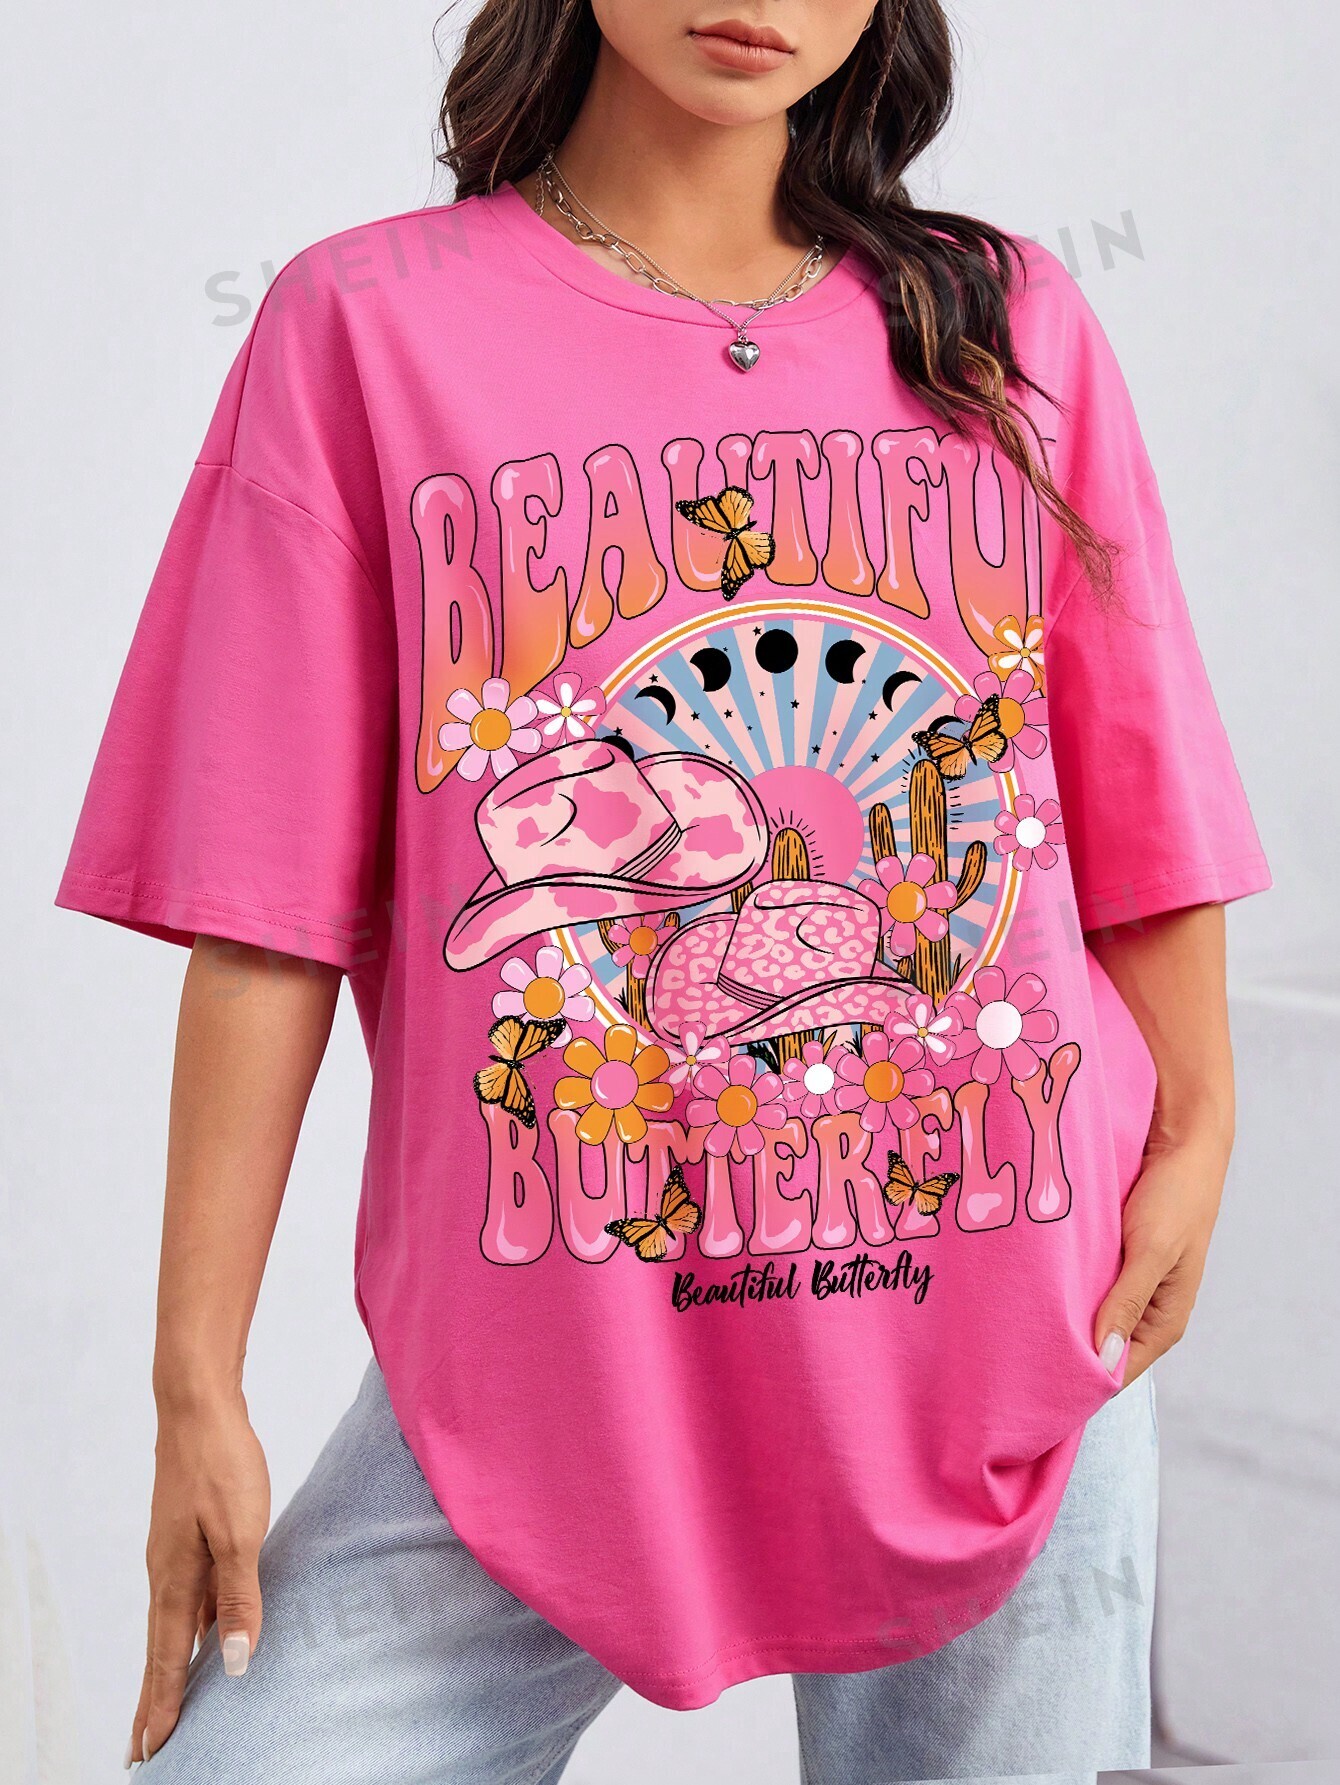 SHEIN EZwear Повседневная женская футболка свободного кроя с круглым вырезом и короткими рукавами с узором акулы, розовый модная женская футболка с рисунком женская футболка с круглым вырезом летний женский топ футболка женская повседневная футболка